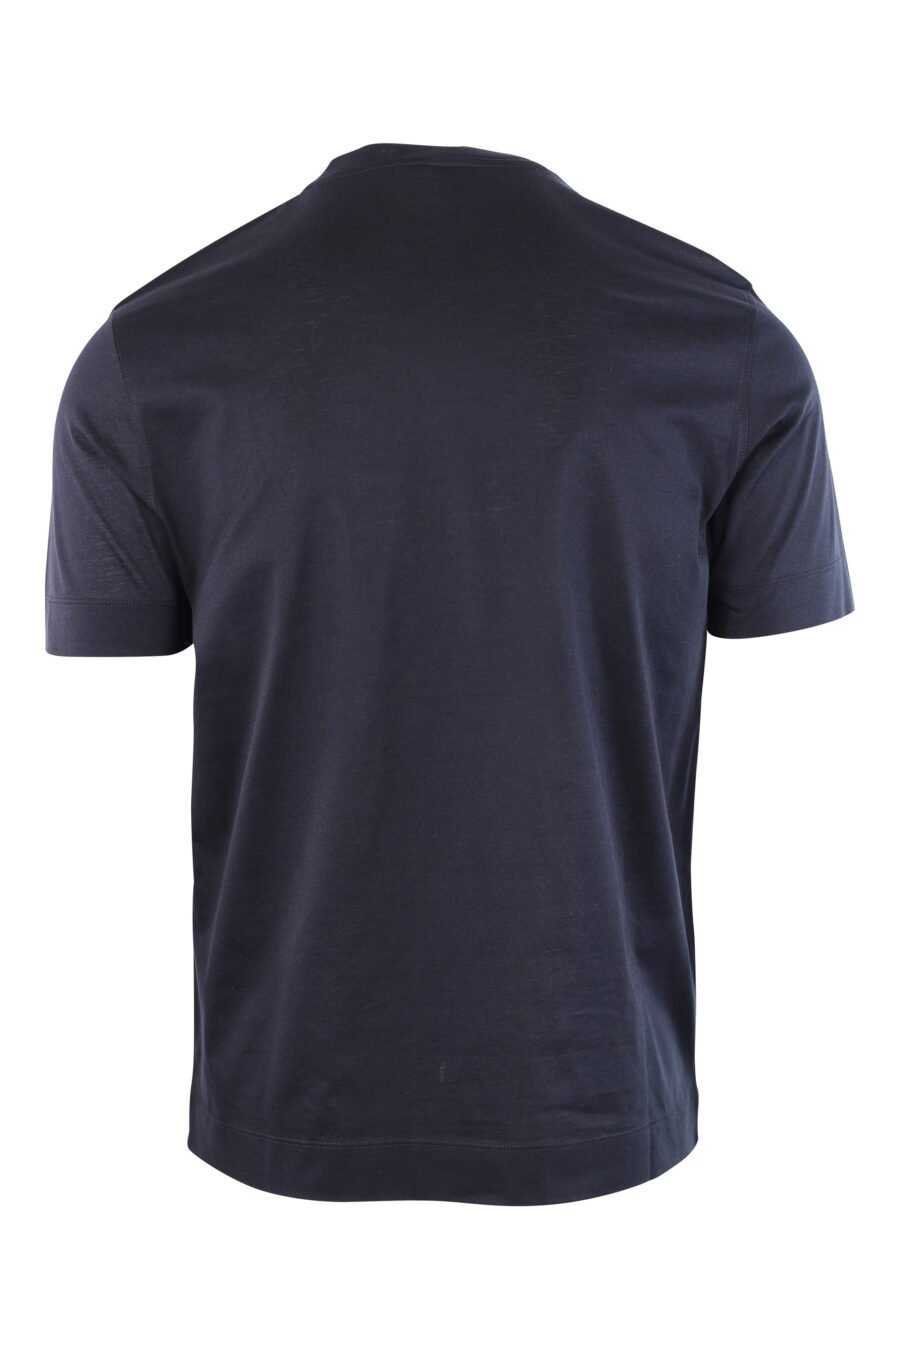 T-shirt azul escura com logótipo bordado - IMG 3782